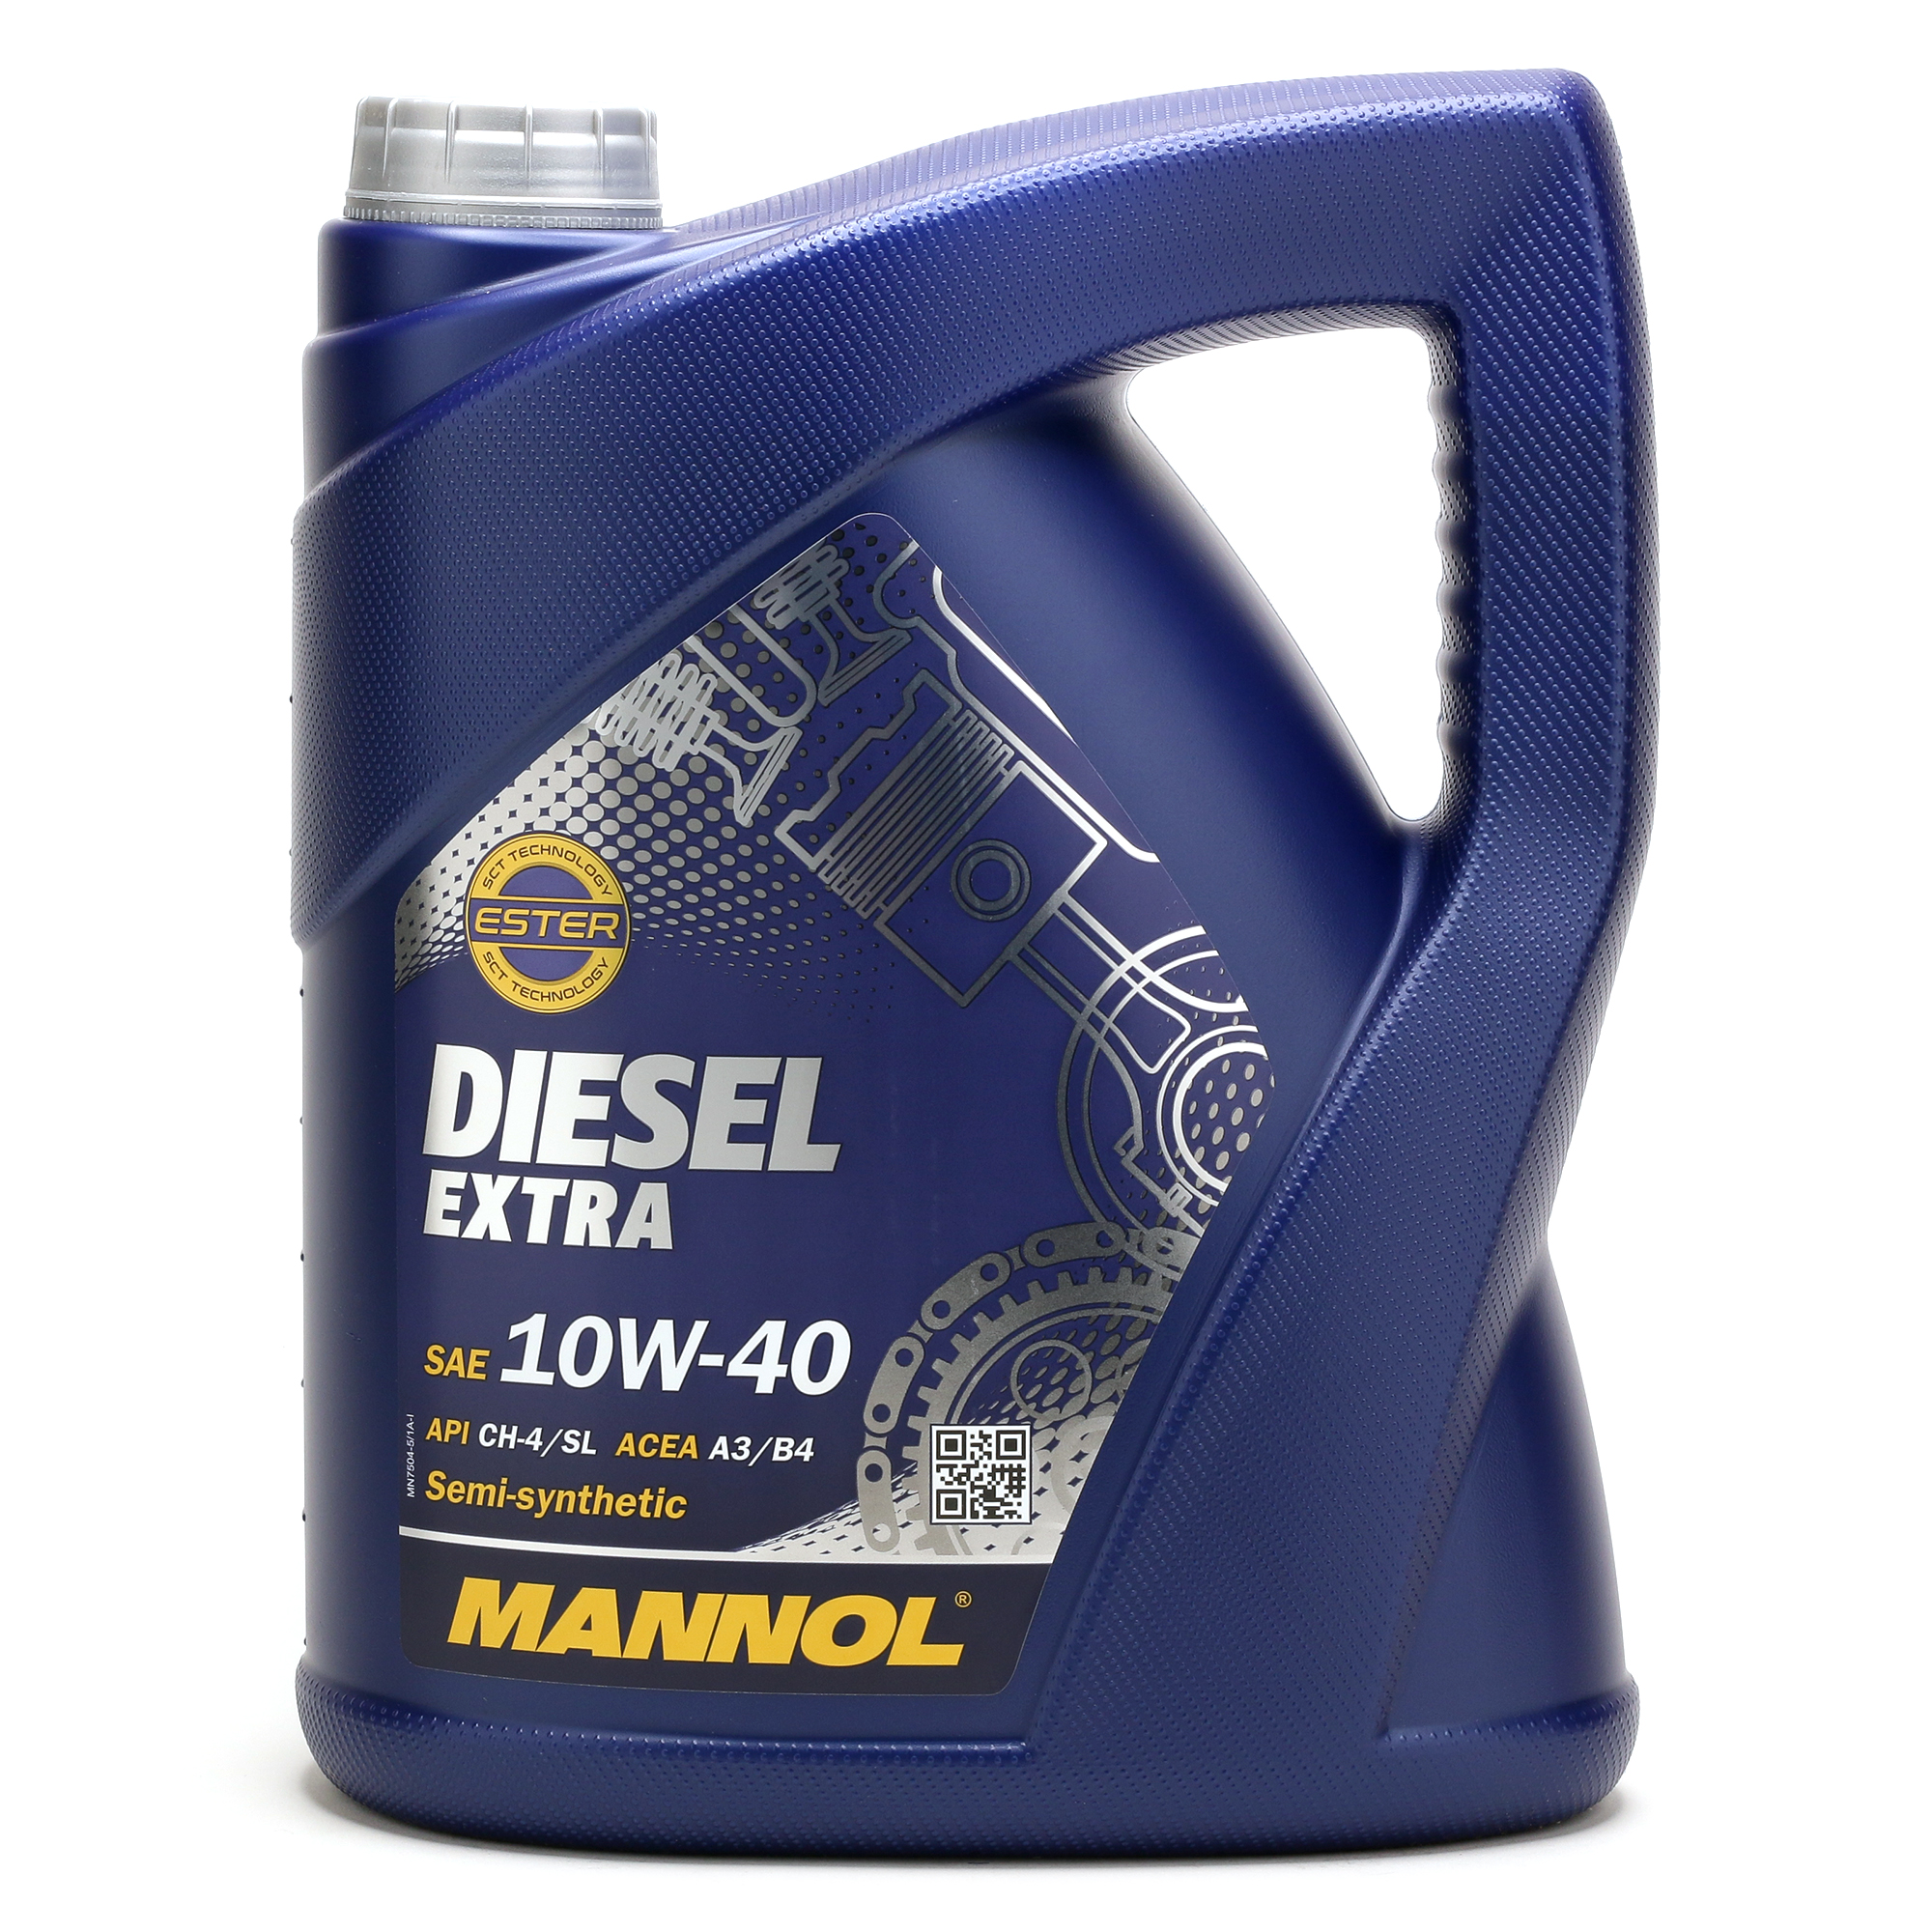 MANNOL Diesel Extra 10W-40 Motoröl 5Liter - SAE 10W-40 - PKW